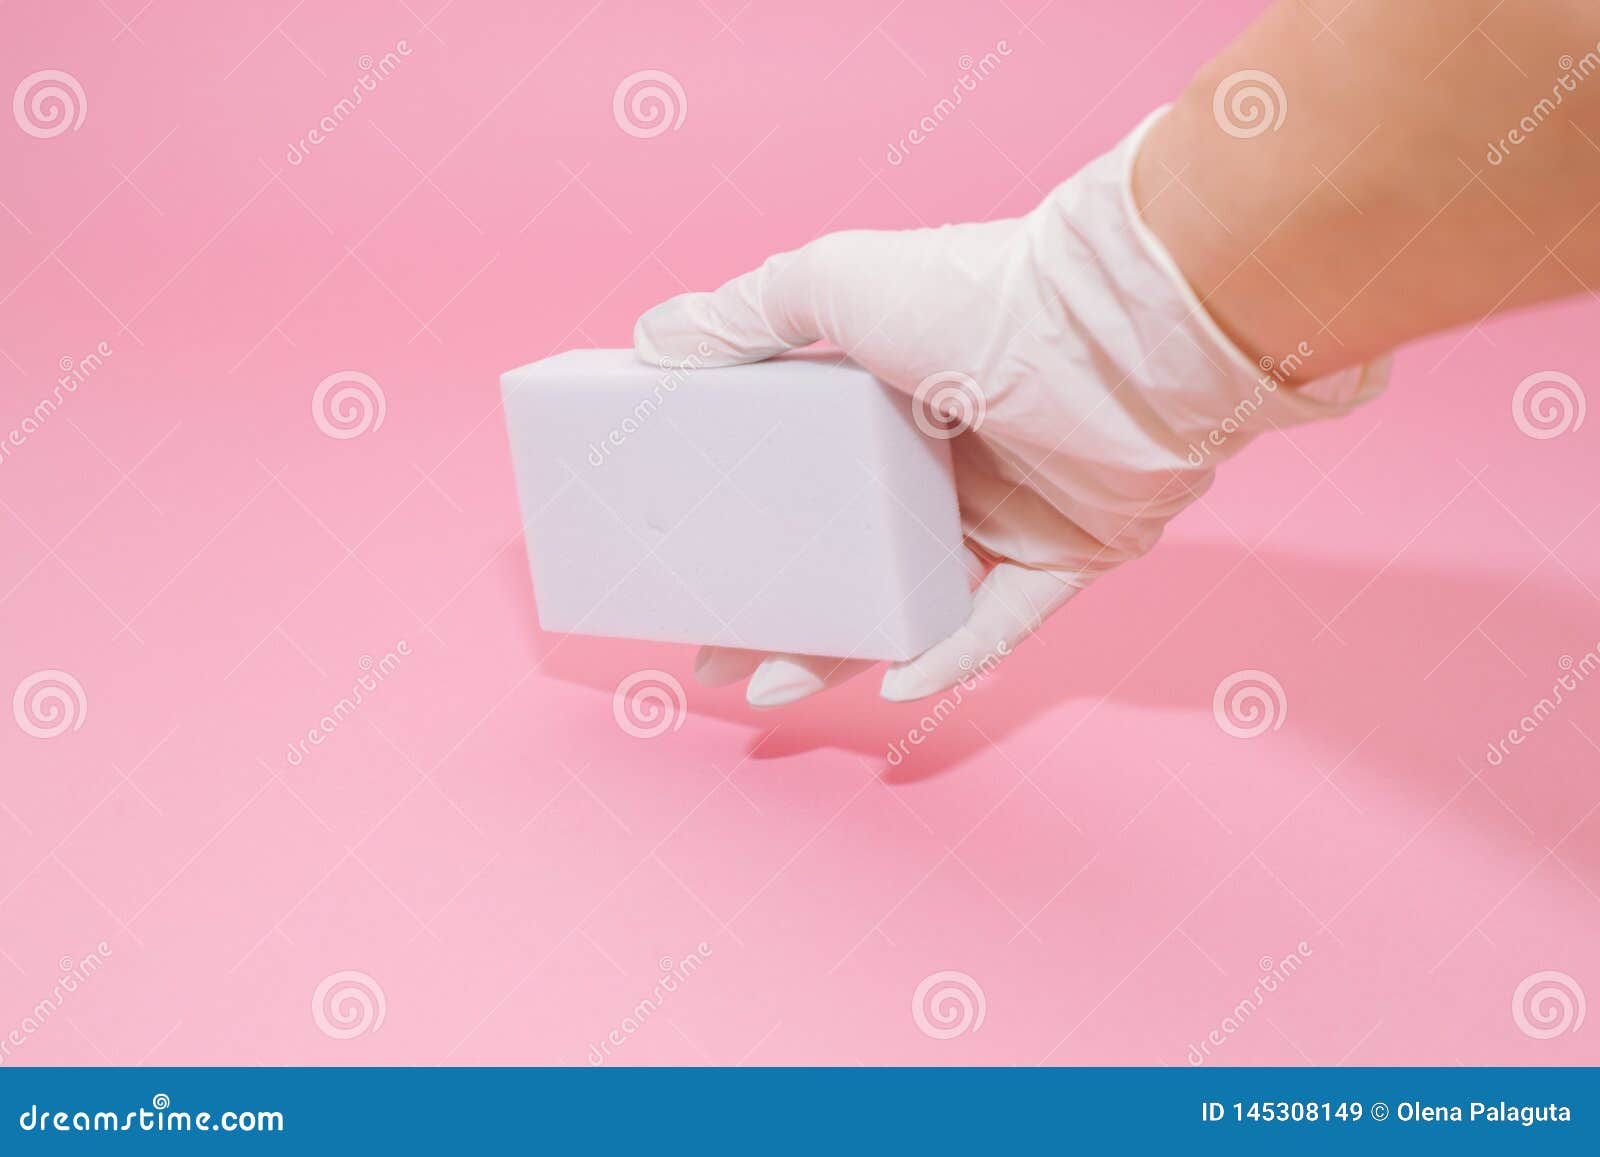 melamine sponges on pink background